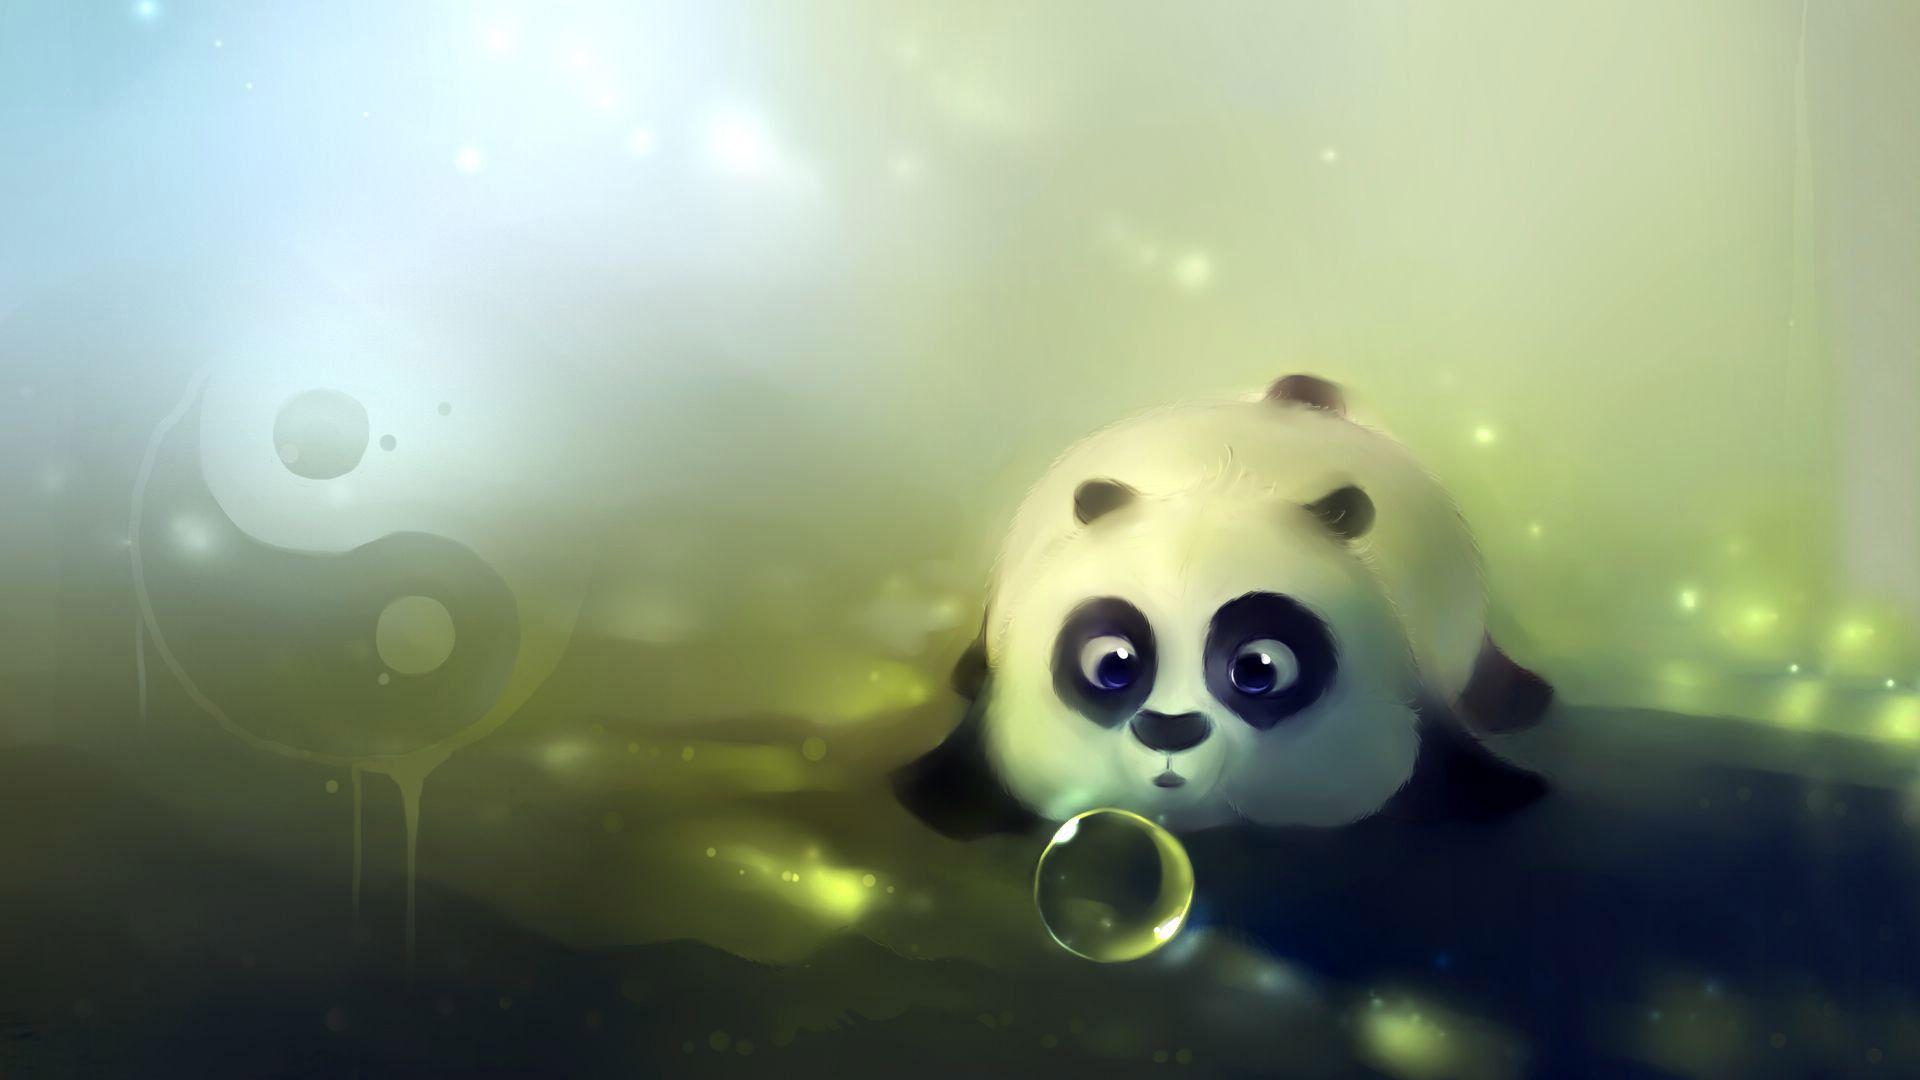 Cartoon Panda looks Cute Wallpaper in 3D